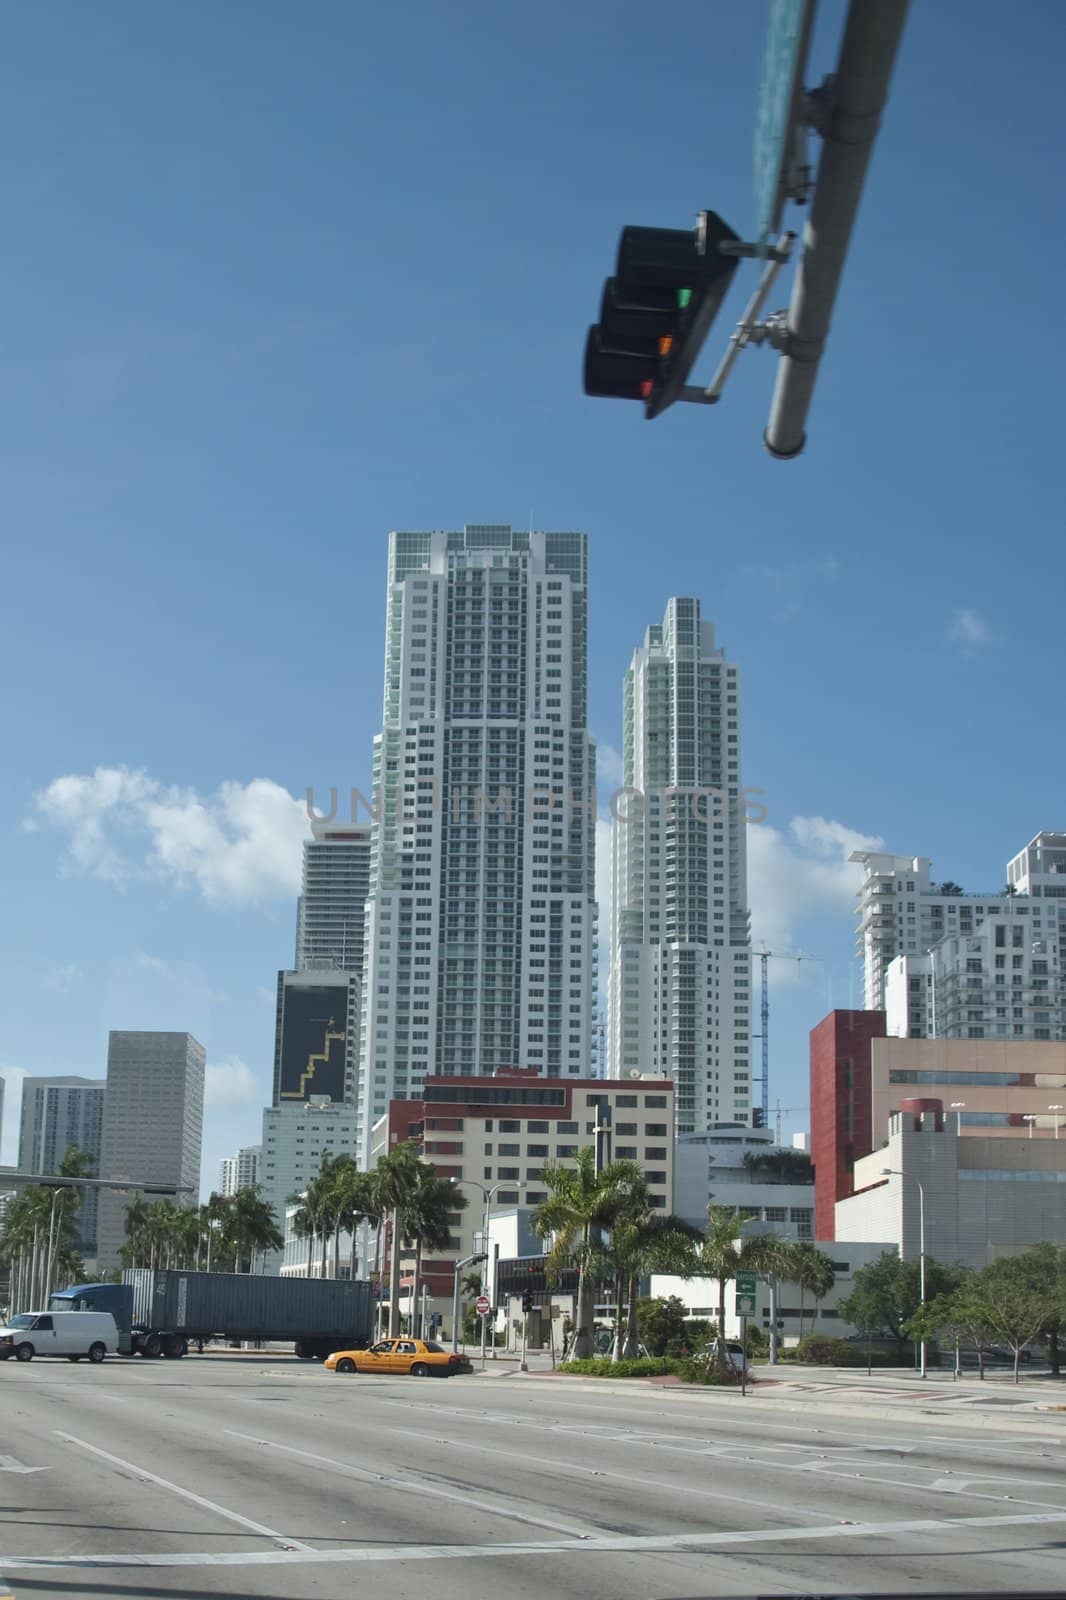 Detail of Miami, Florida, April 2009